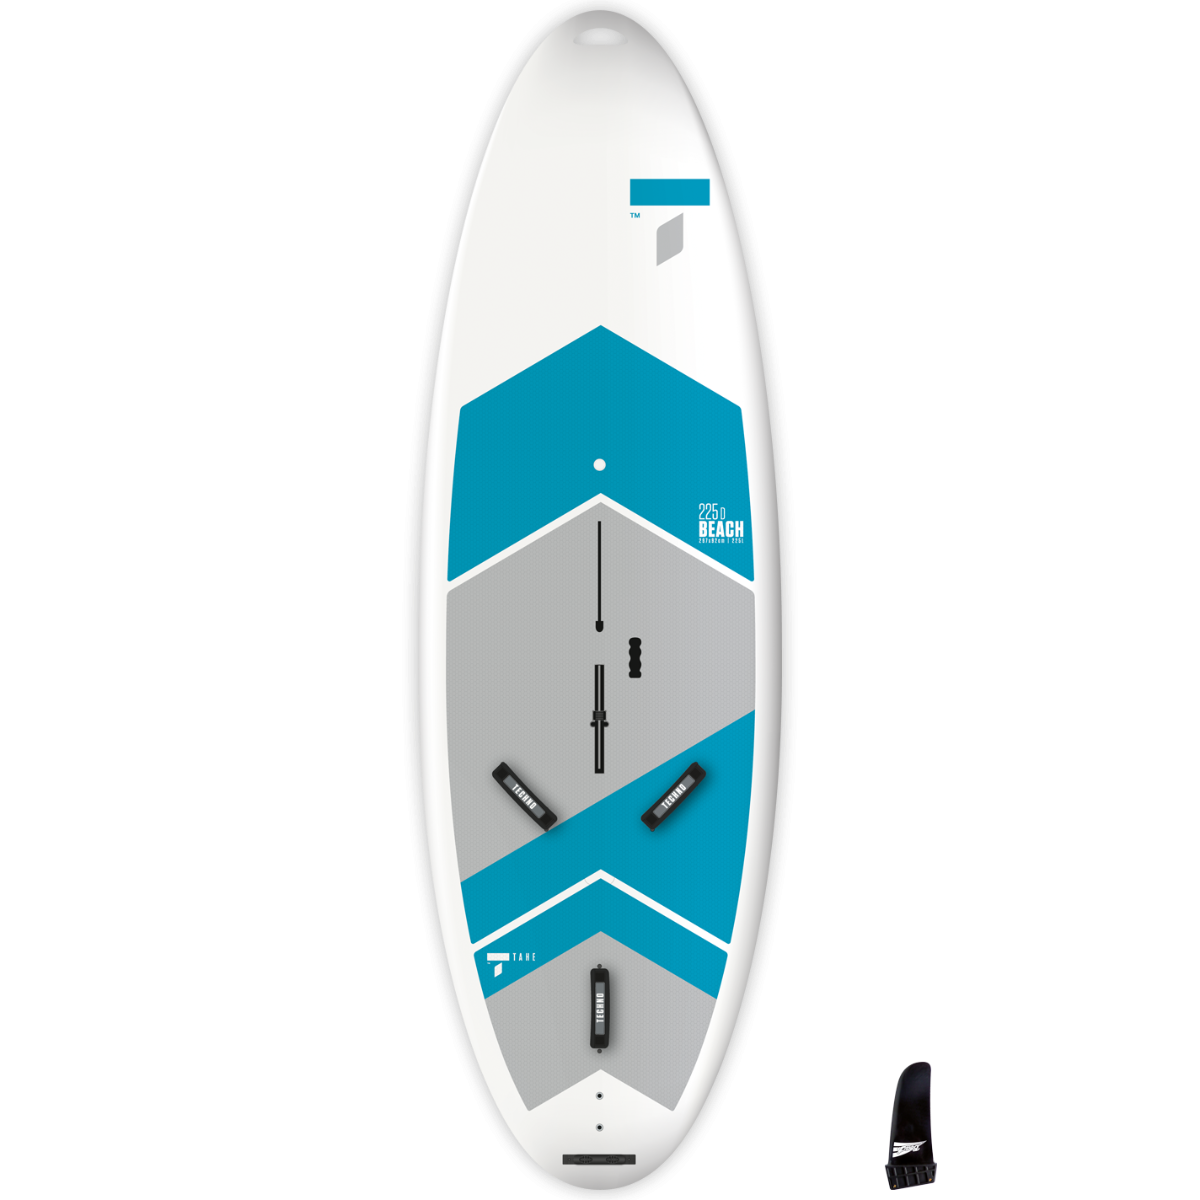 Tahe Beach 225D windsurfer for sale